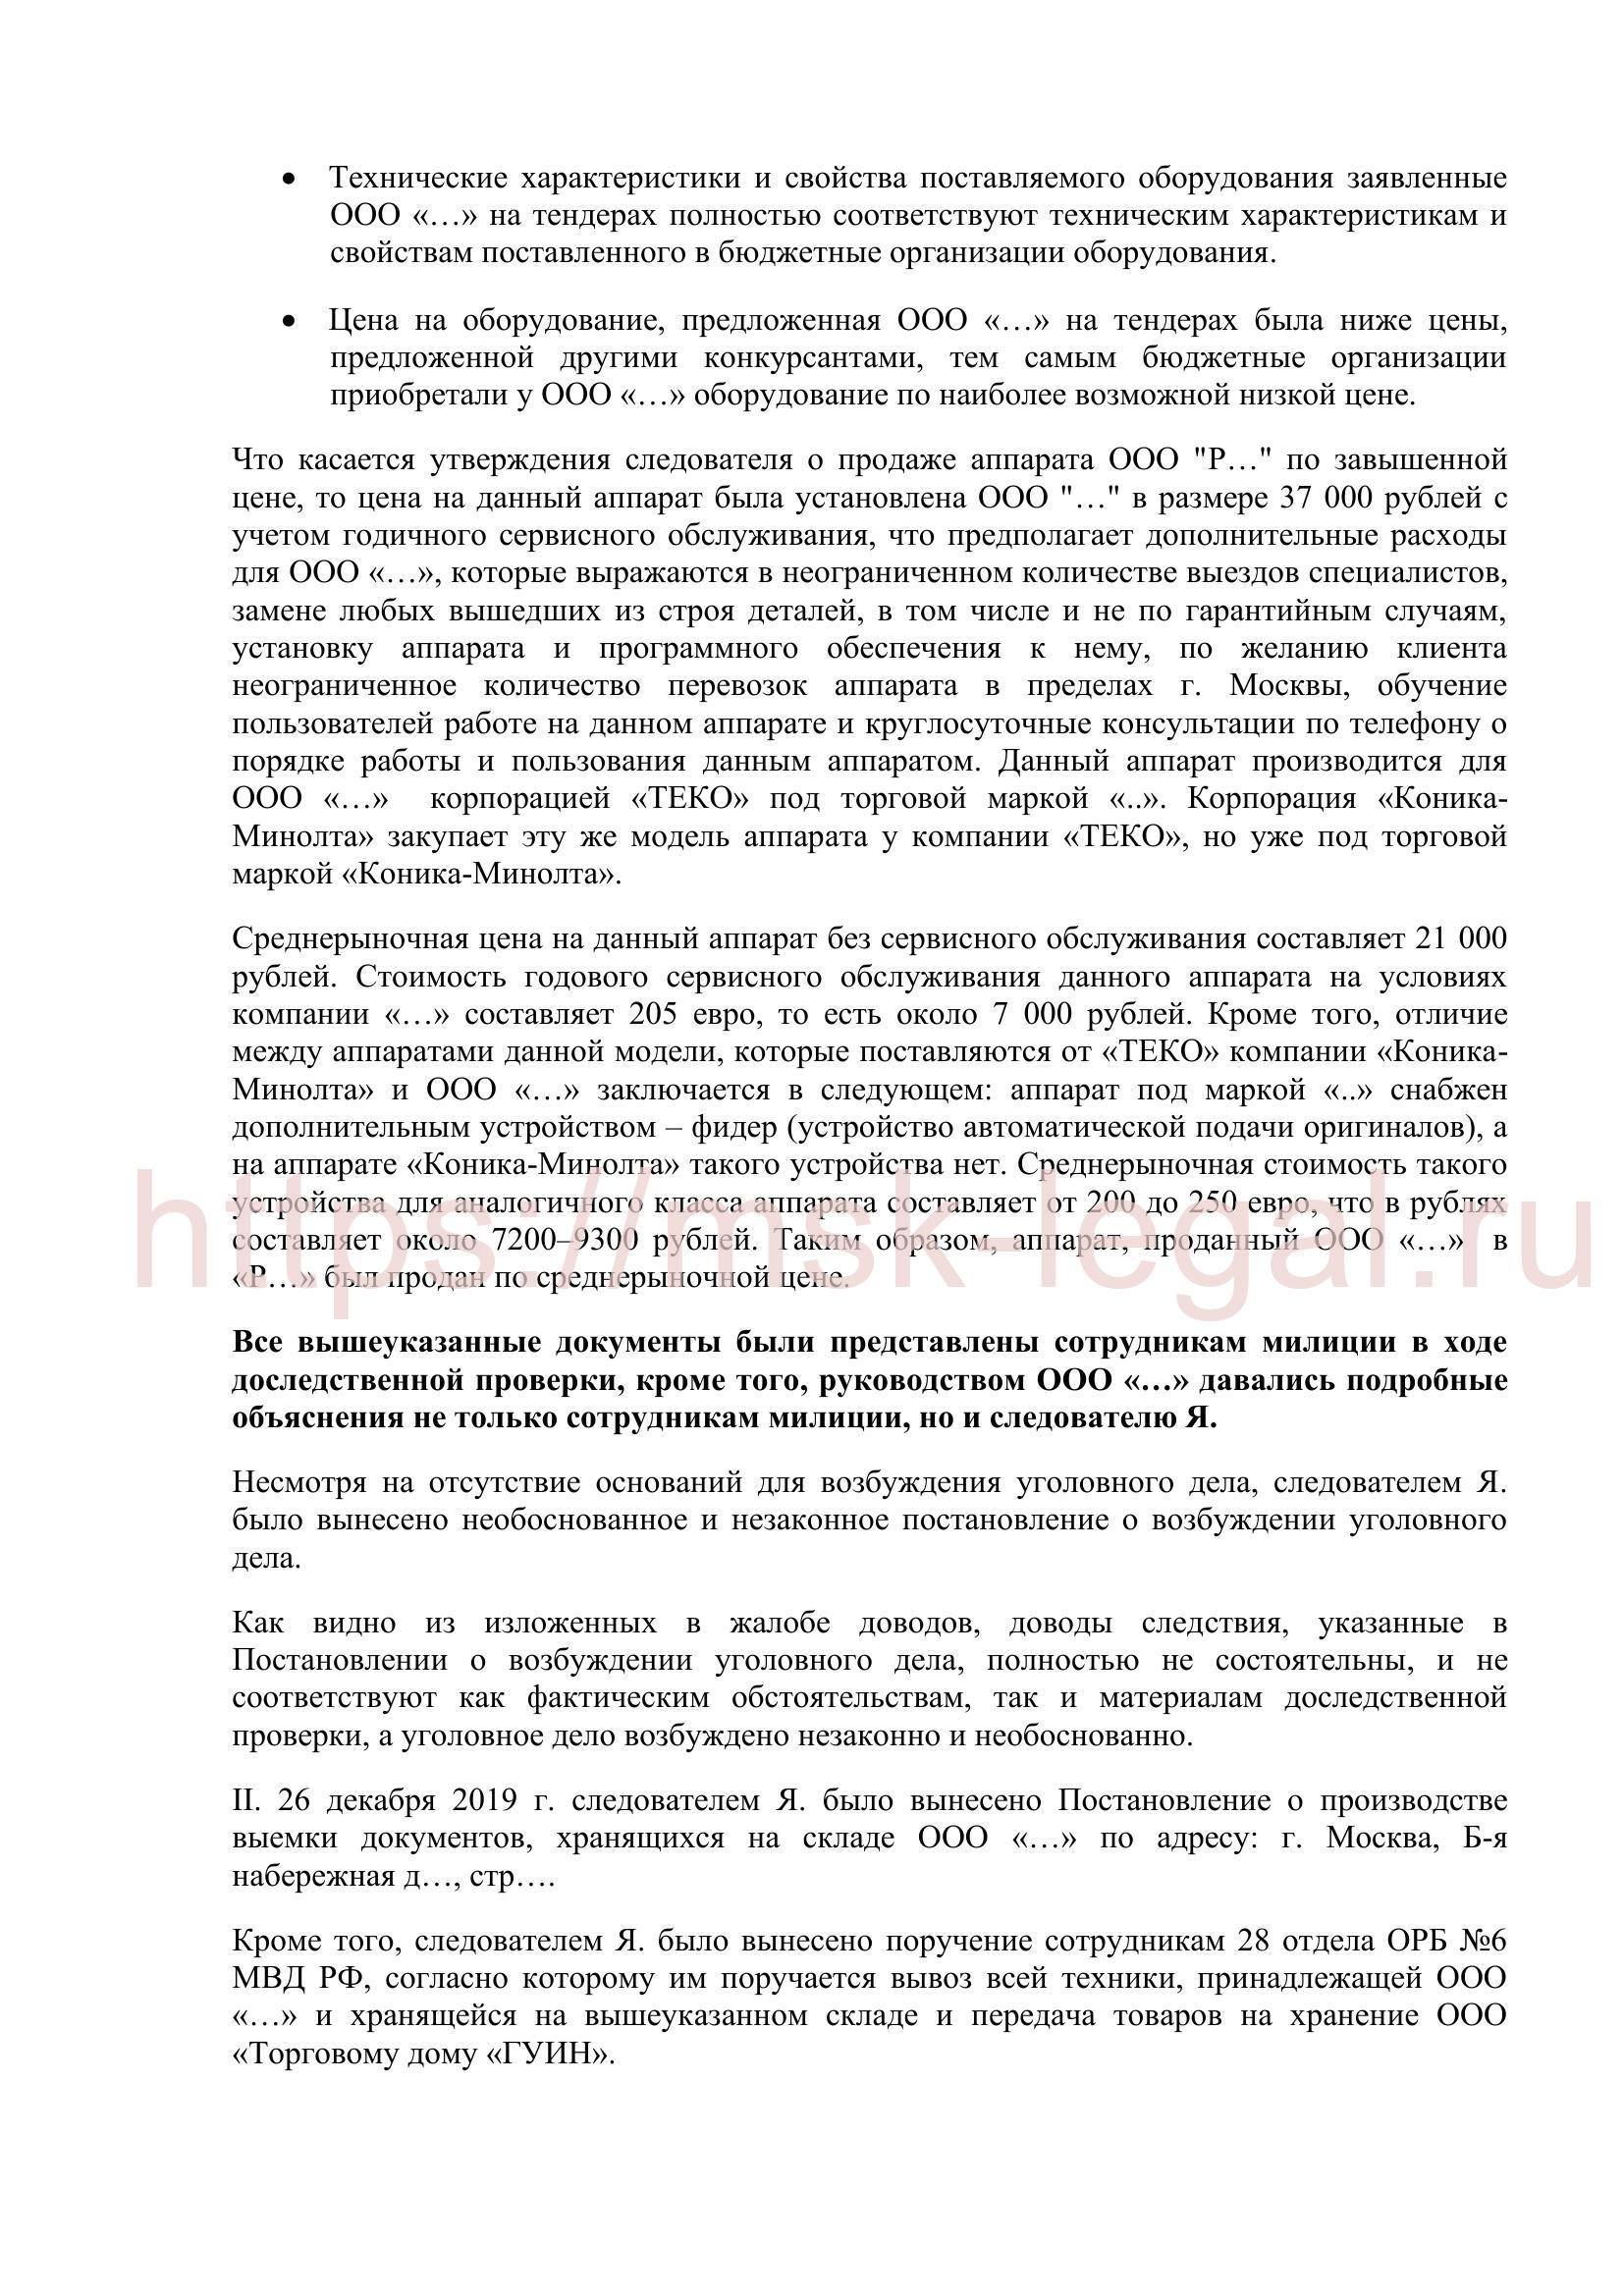 Пример жалобы по ст. 125 УПК РФ в суд